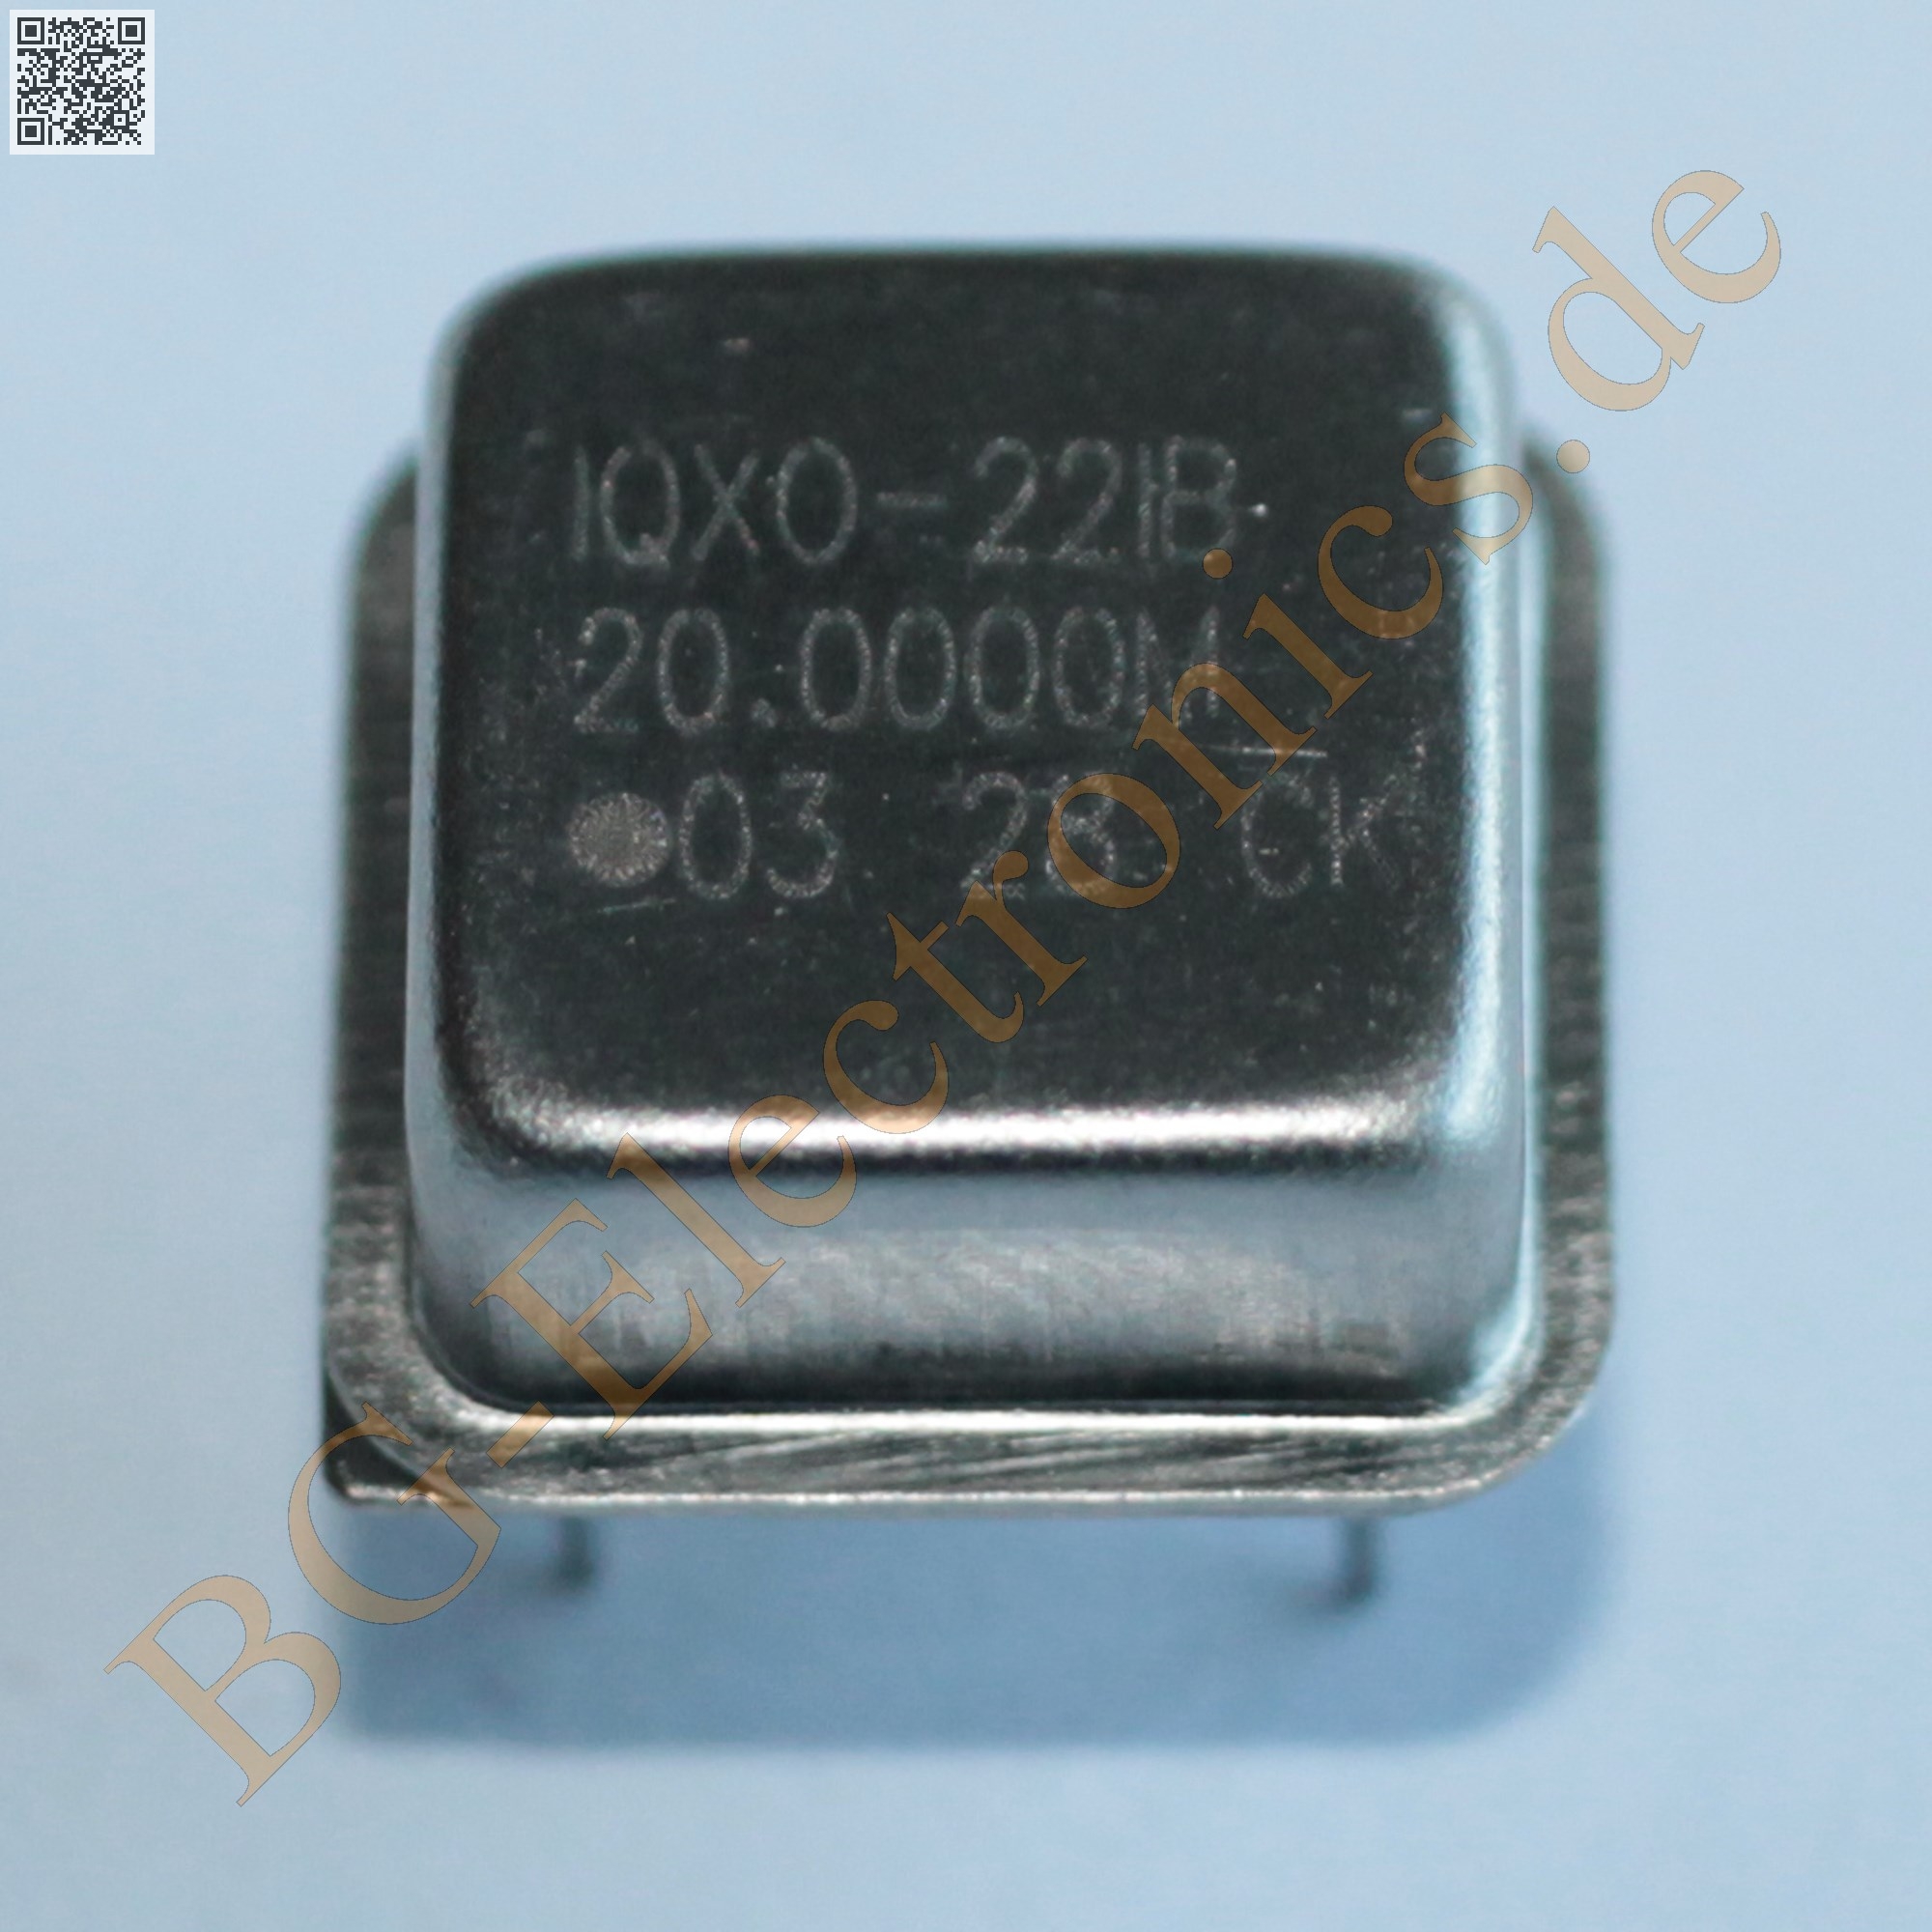 20.000 MHz Crystal Oscillator